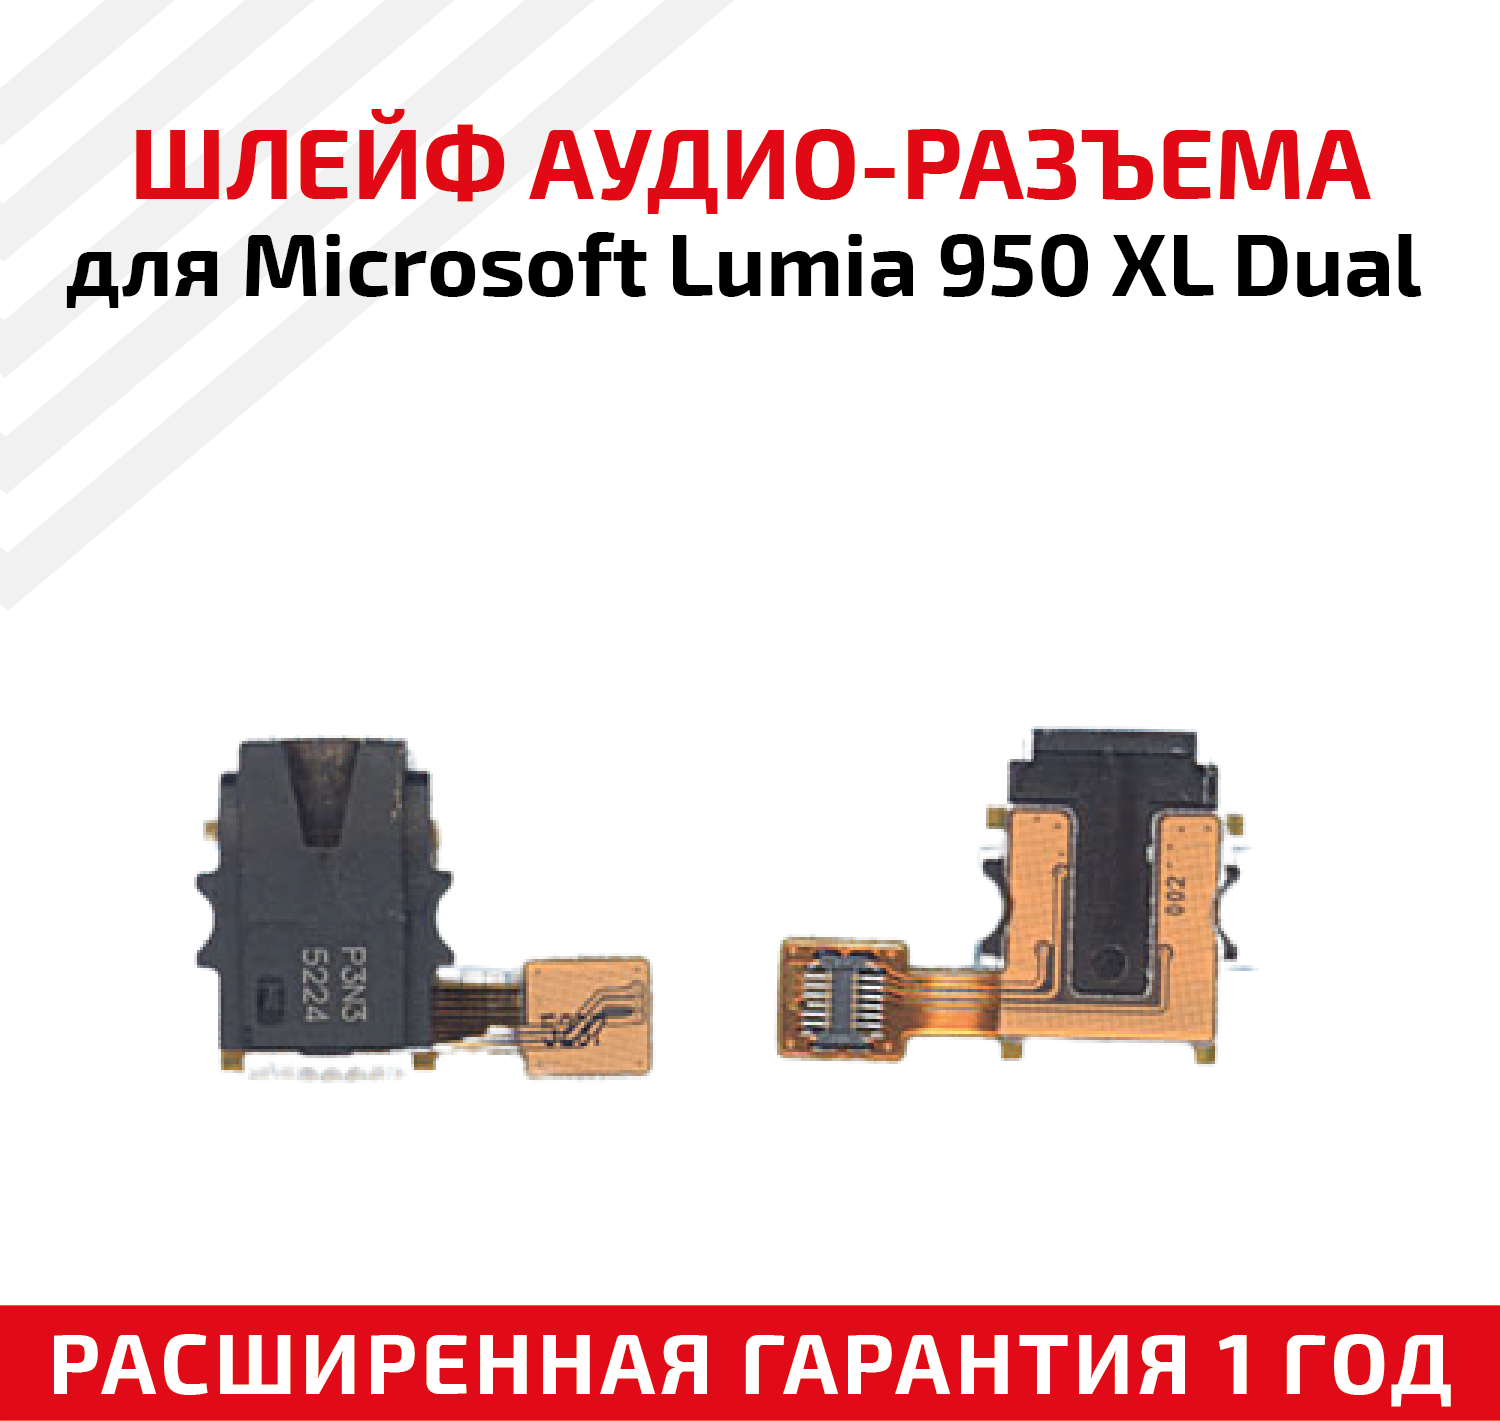 Шлейф aудио-разъем для мобильного телефона (смартфона) Microsoft Lumia 950 XL Dual